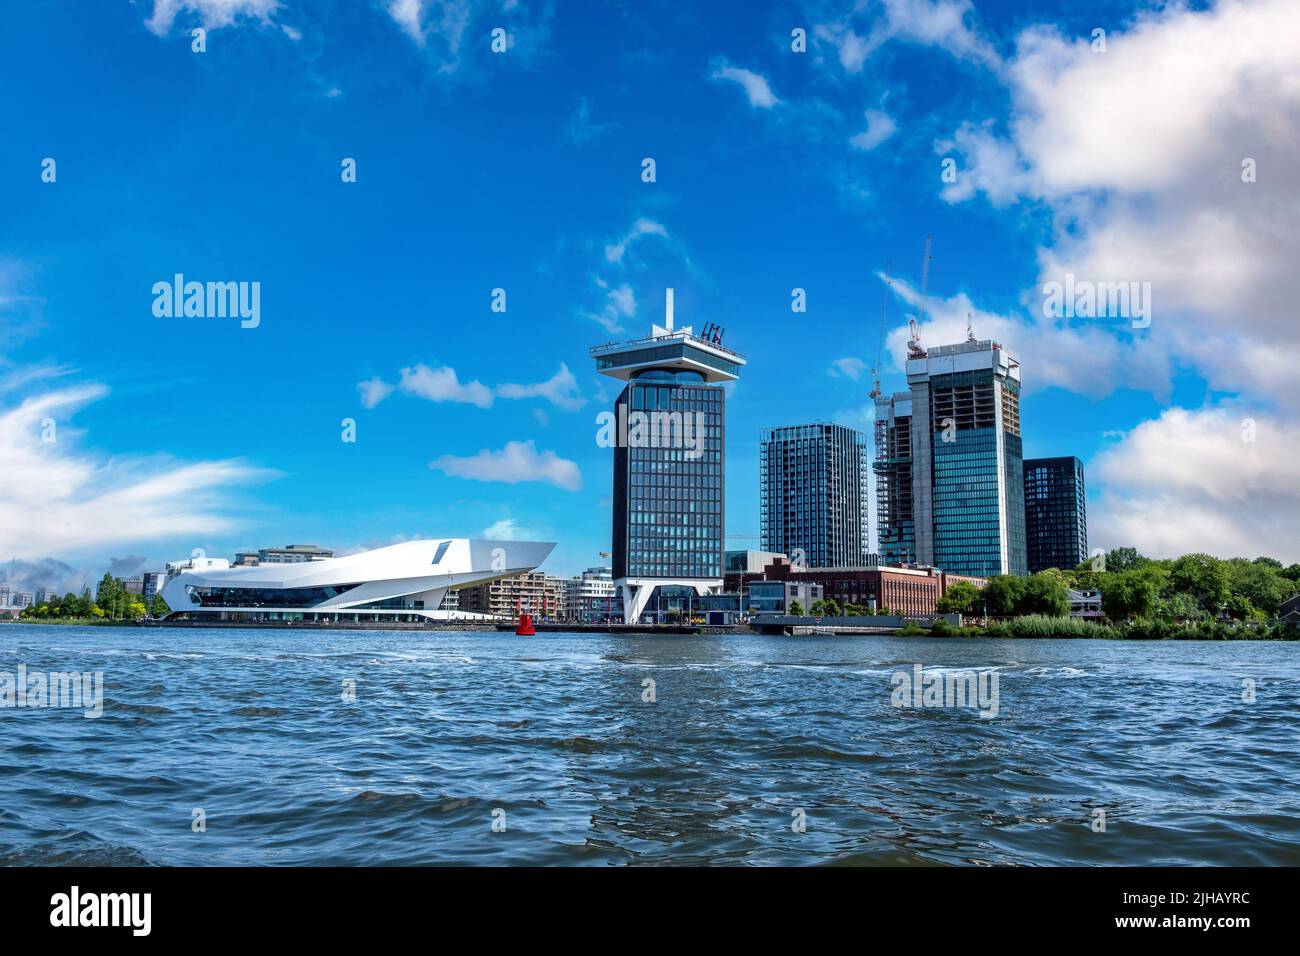 Eye Filmmuseum Amsterdam, moderner Wolkenkratzer, Filmarchiv und Kino, Holland Niederlande. Hochhaus am Wasser, blauer Himmel im Hintergrund. Stockfoto